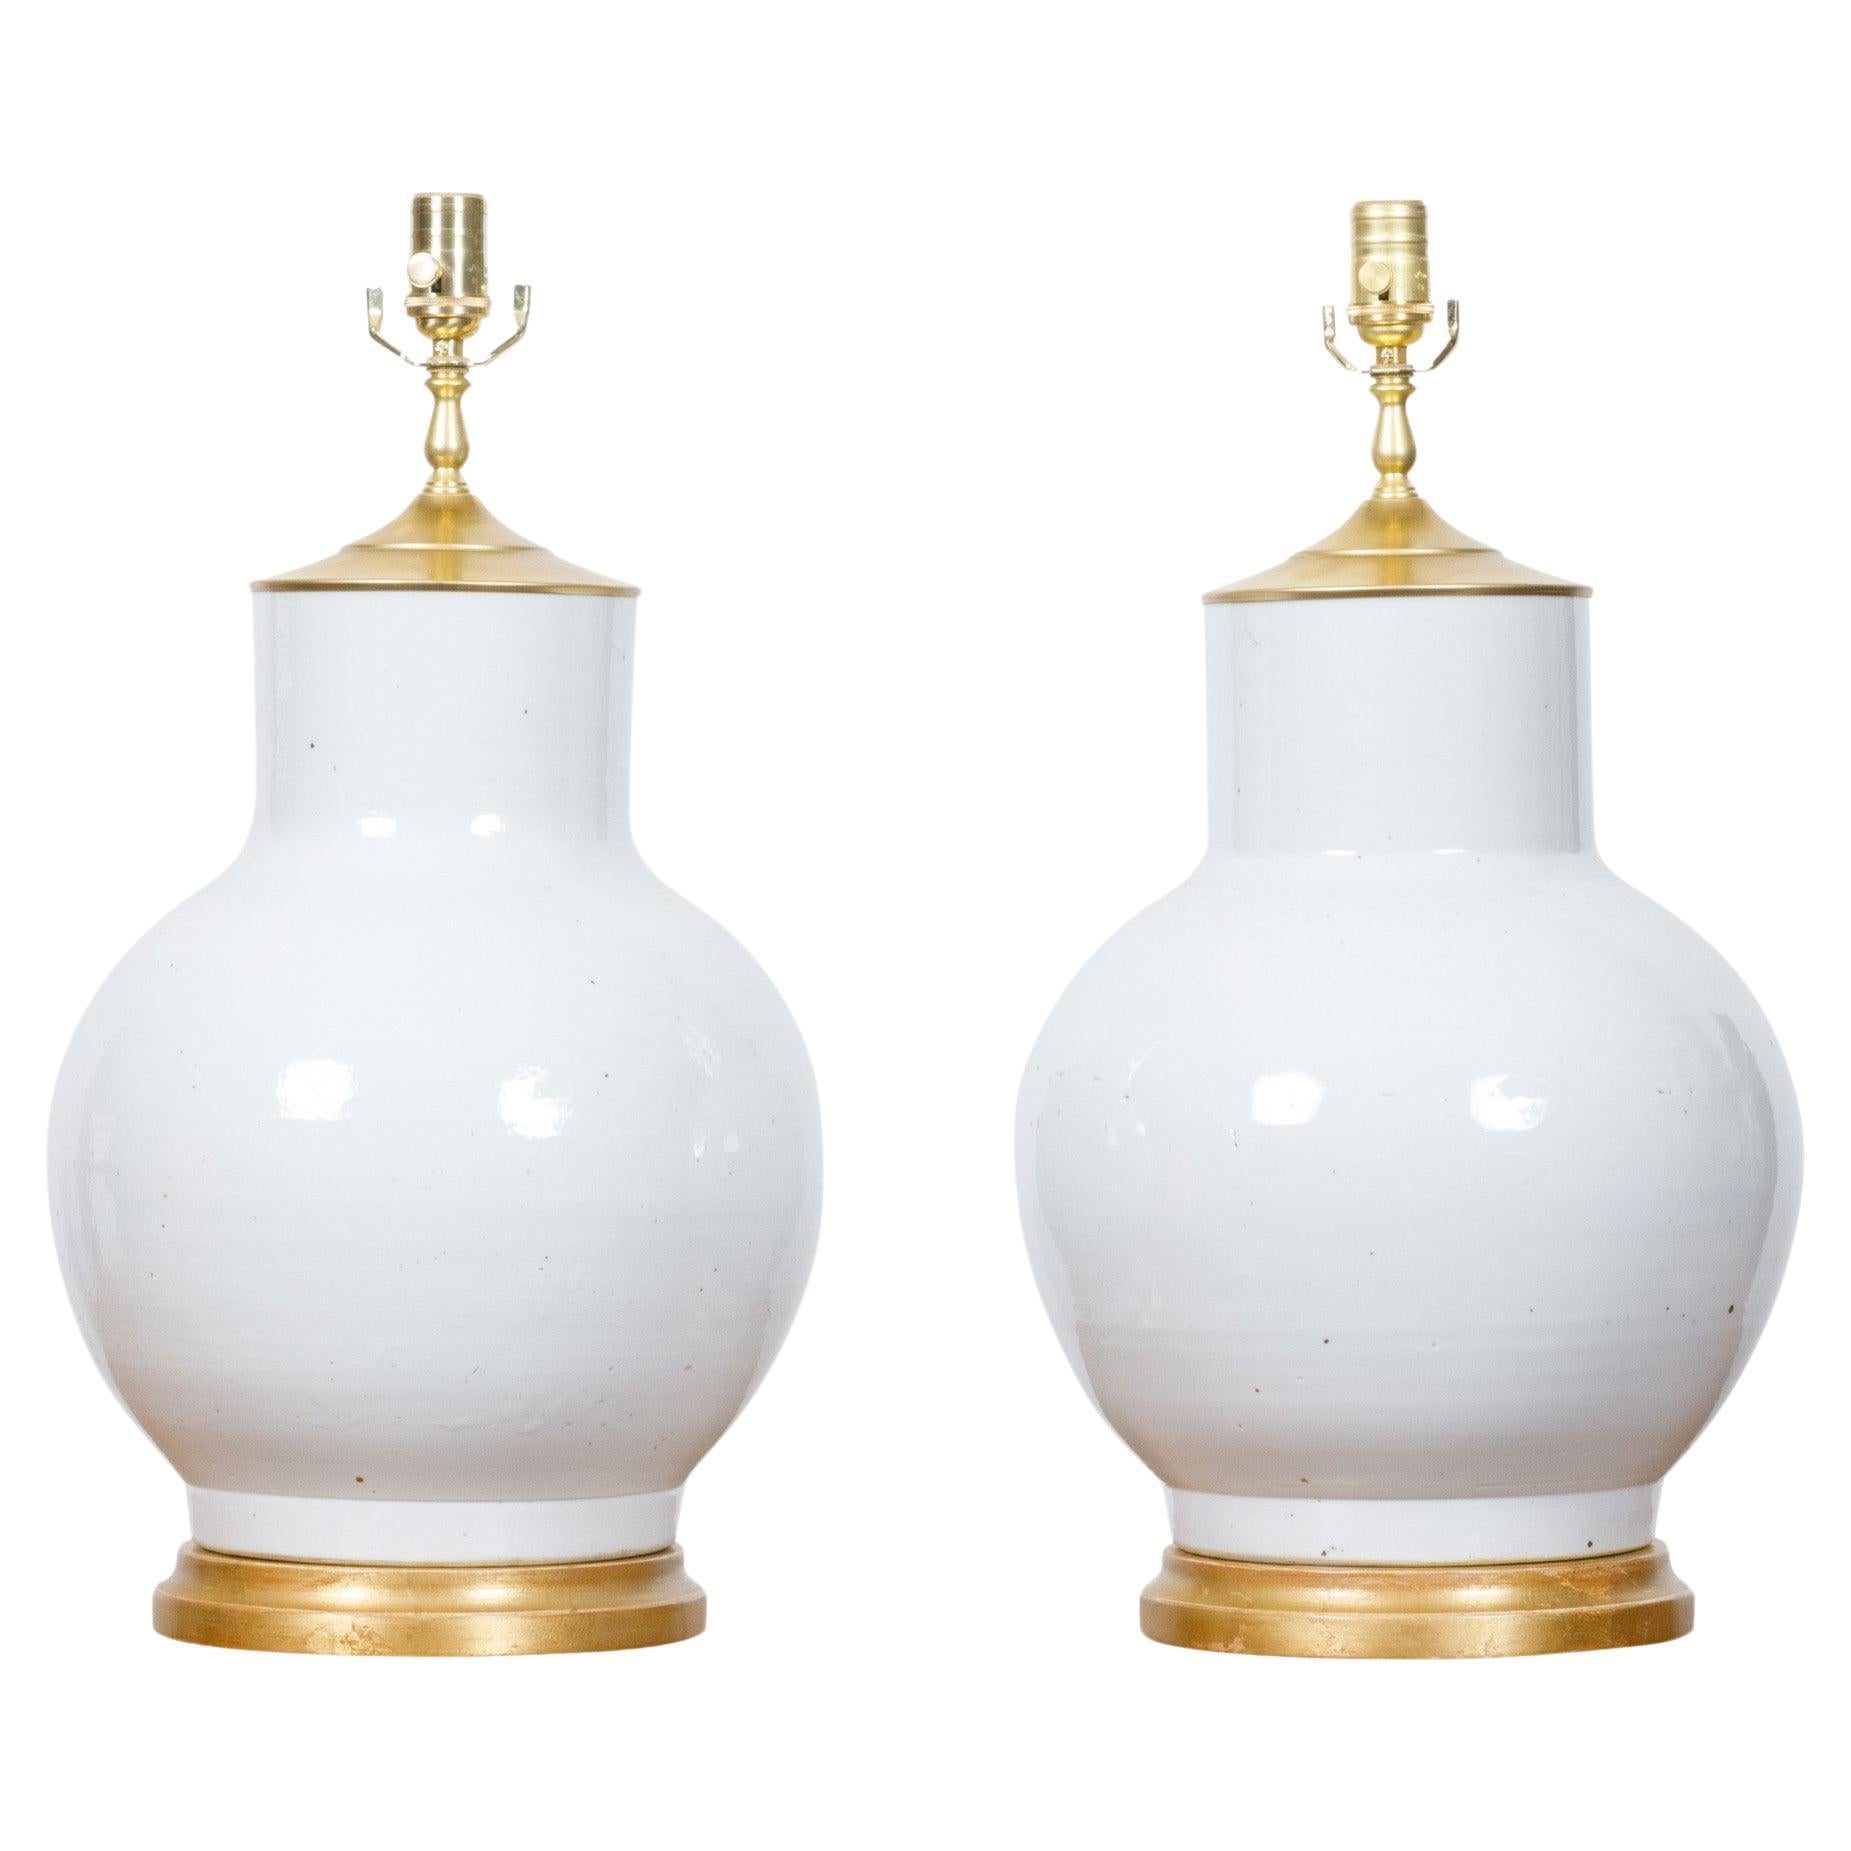 Paire de vases en porcelaine blanche transformés en lampes de table câblées aux États-Unis sur bases en bois doré